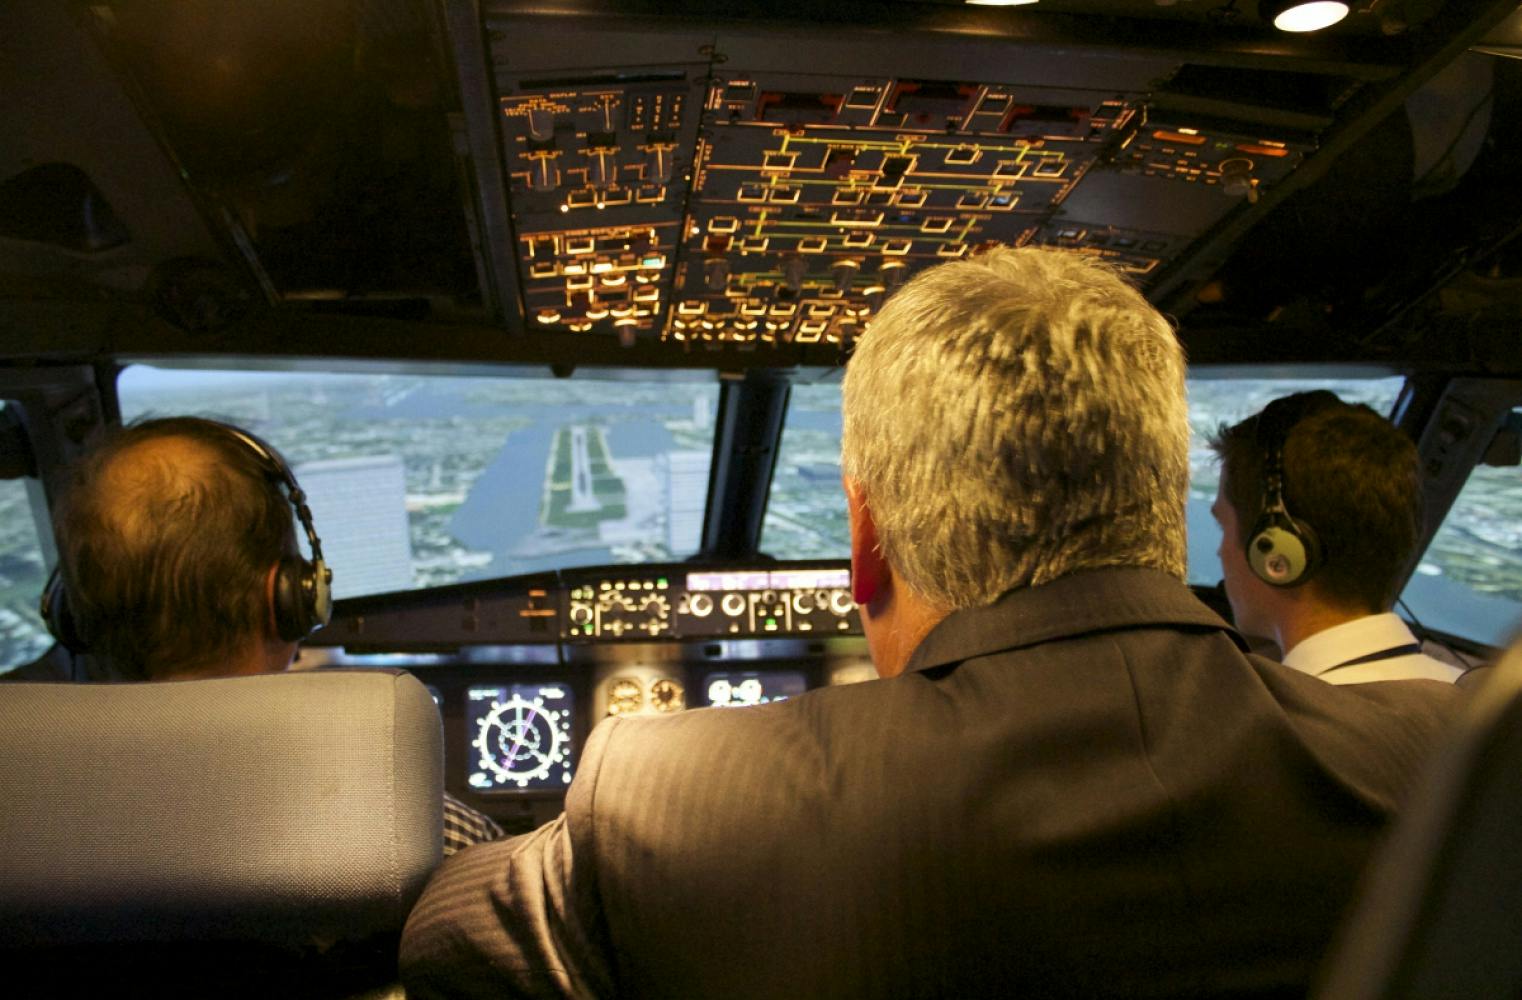 Flugsimulator Airbus A320 | 60 Minuten Pilot sein